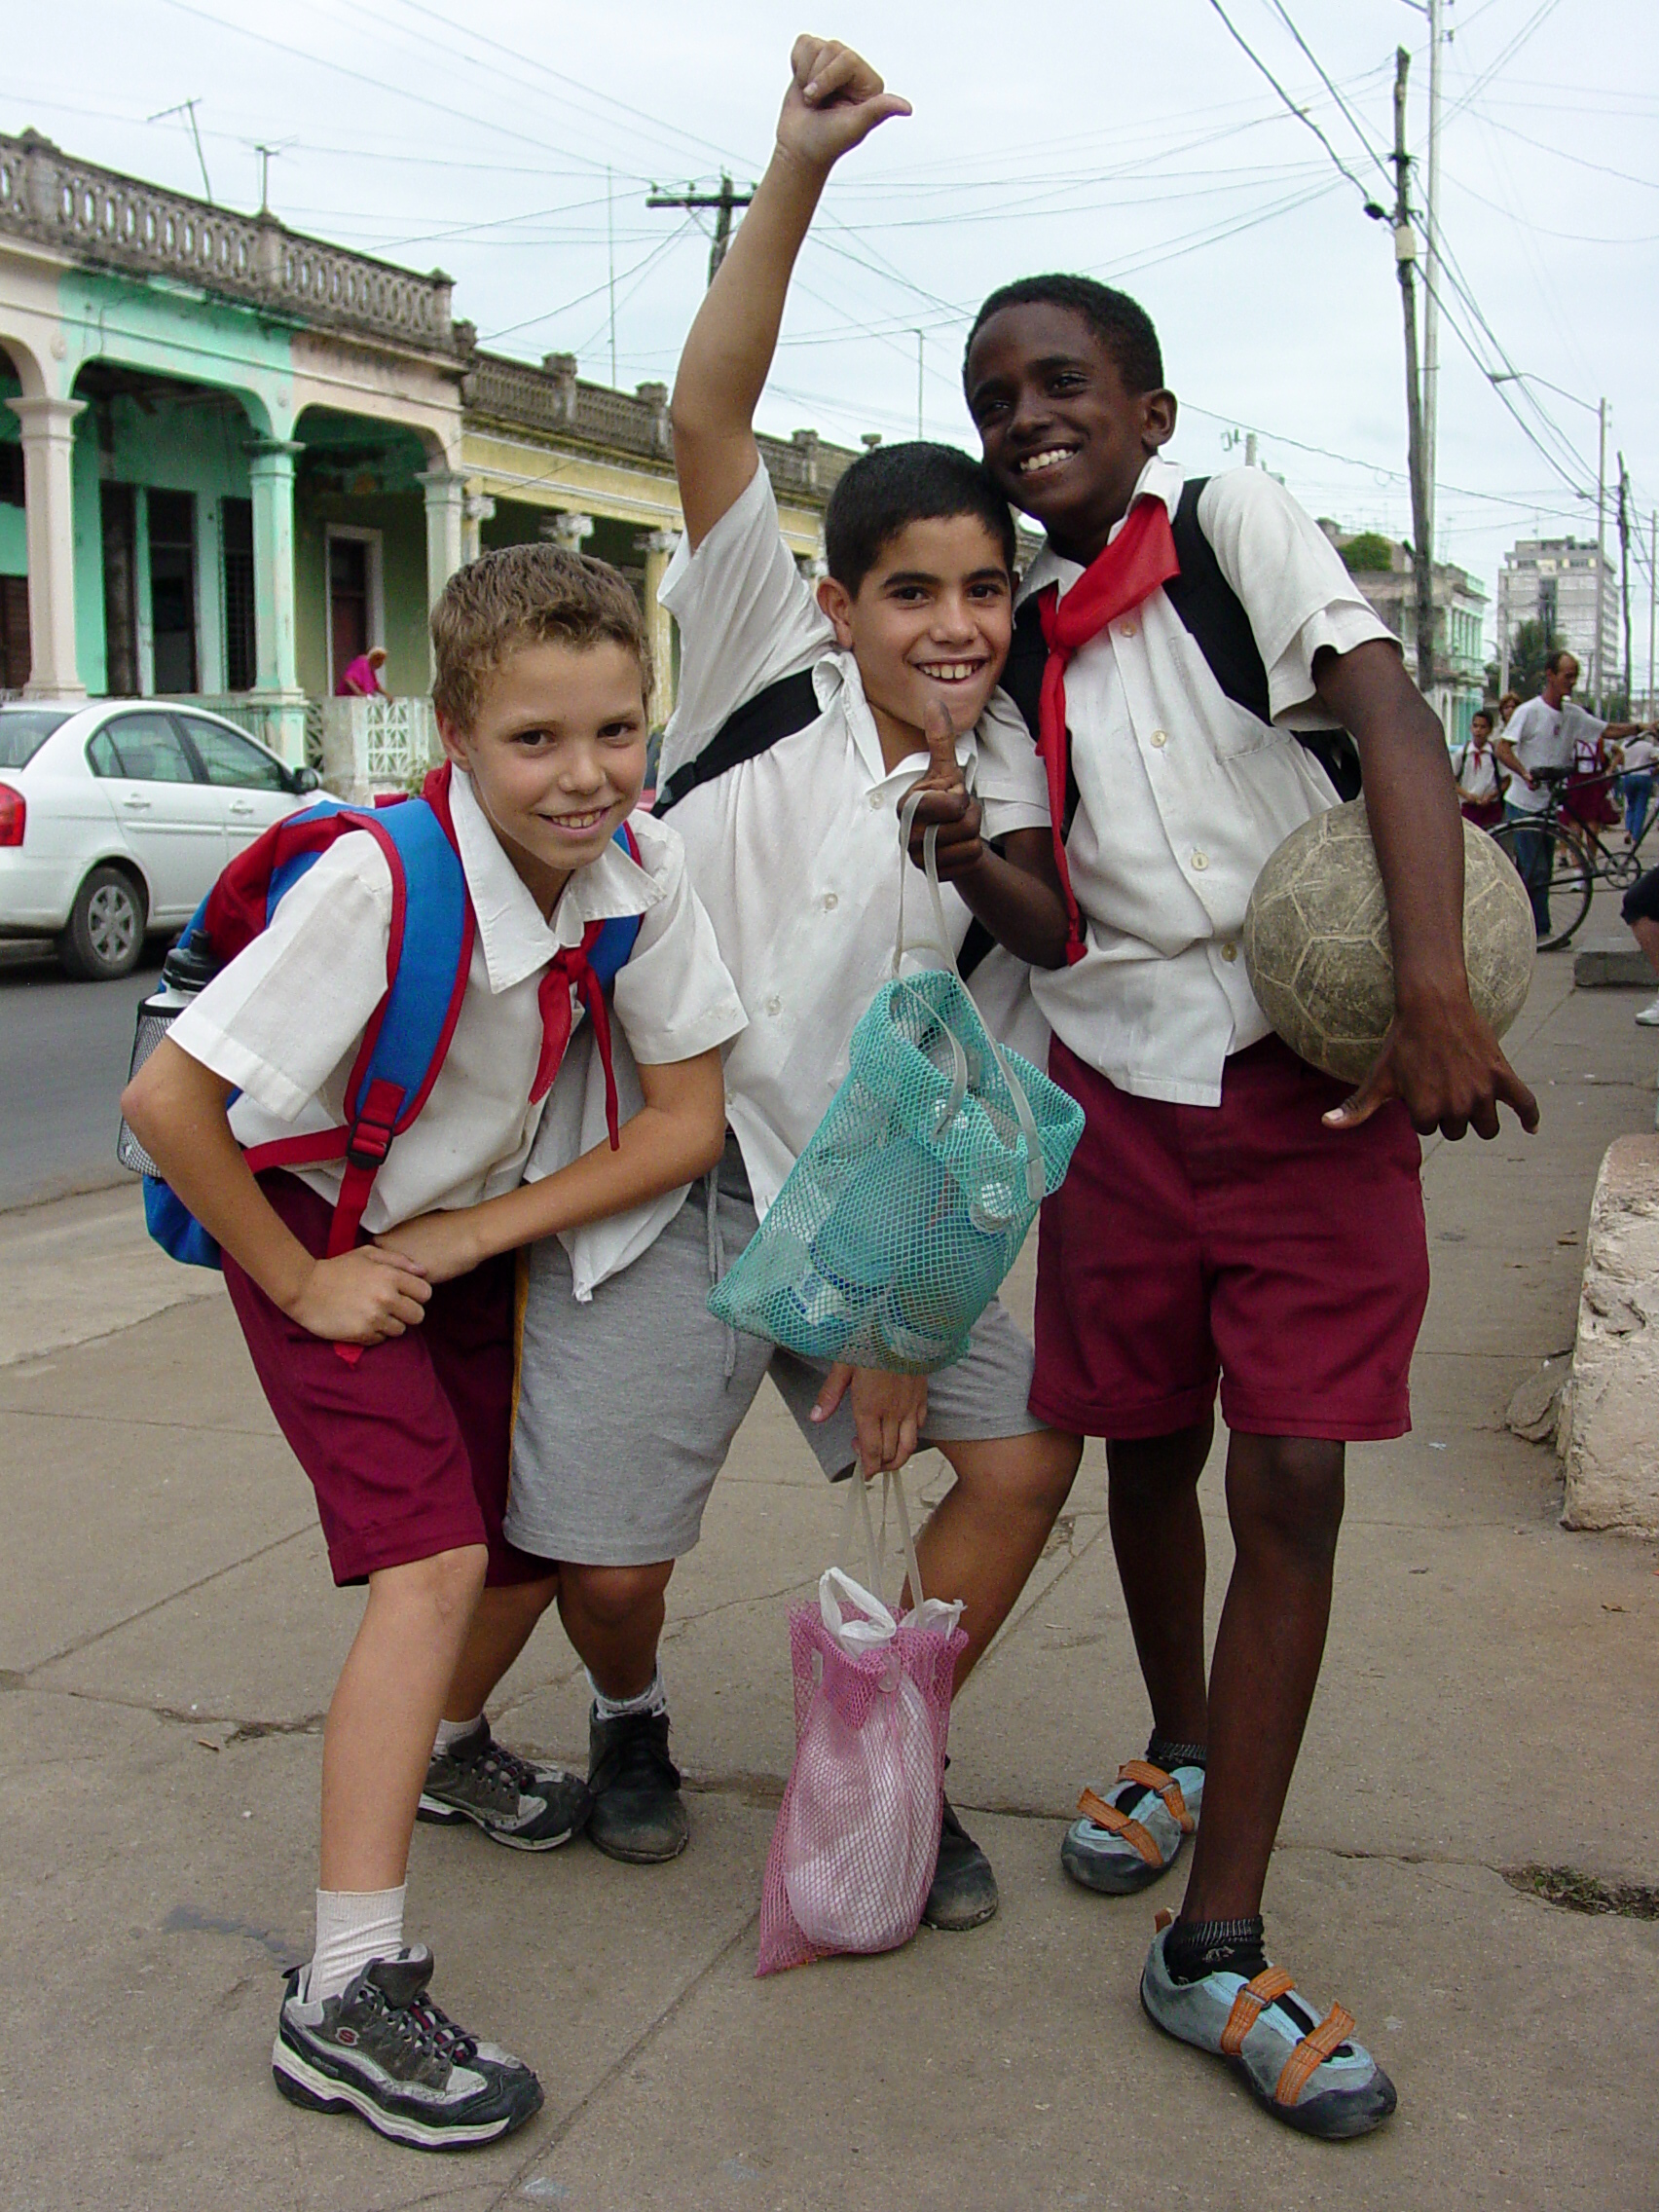 Young Boys in School Uniform - Pinar del Rio - Cuba